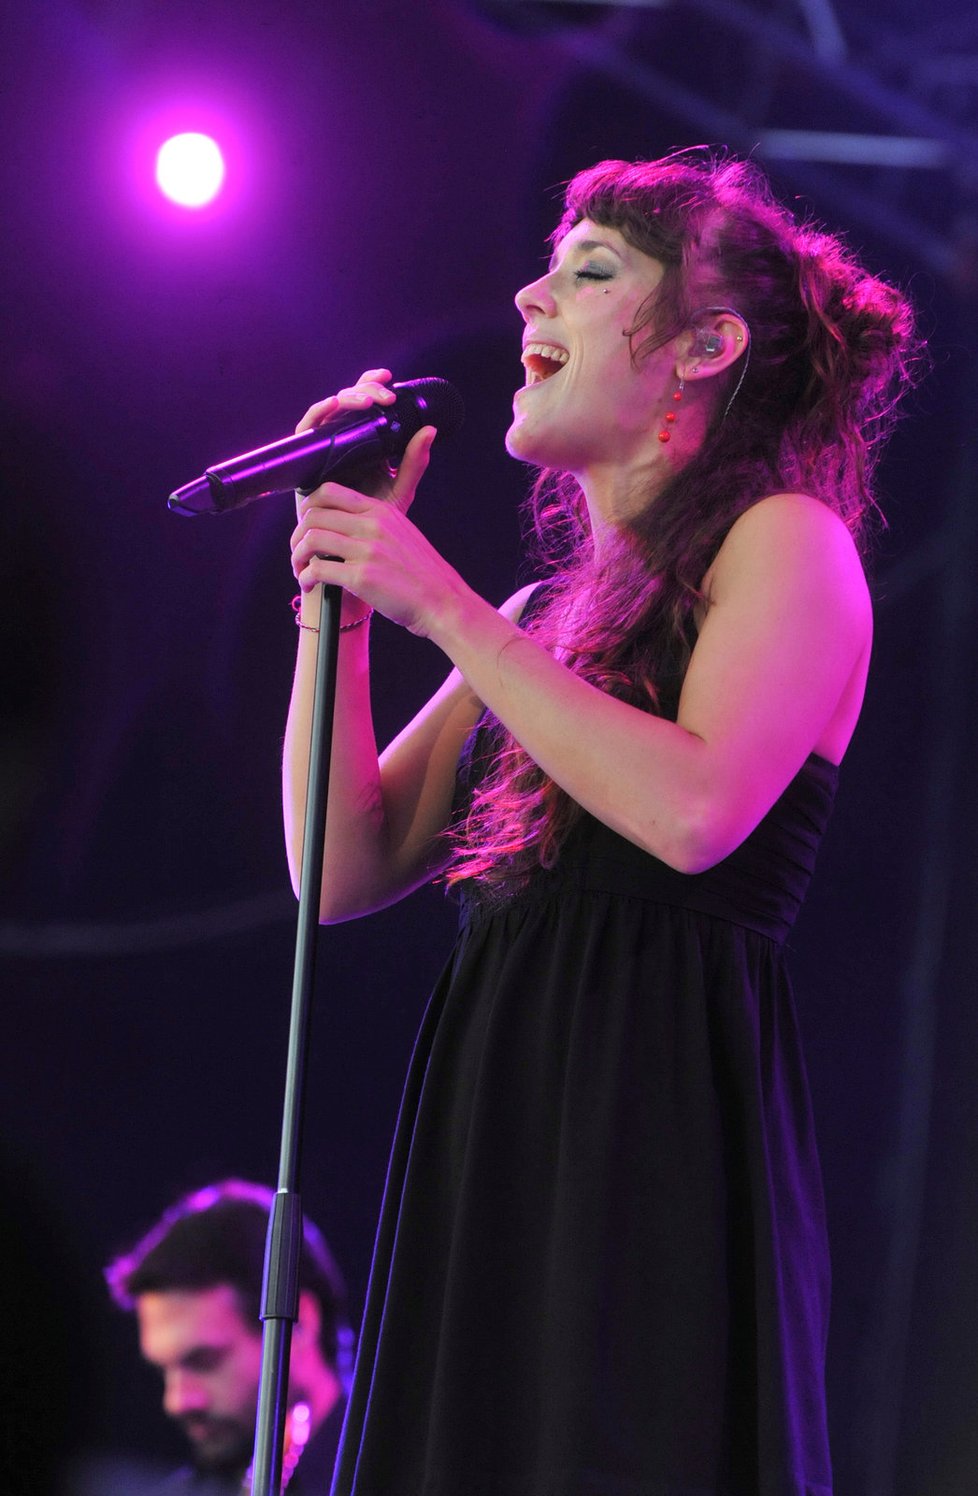 Francouzská zpěvačka a písničkářka ZAZ byla dalším spestřením na bohatém programu festivalu.